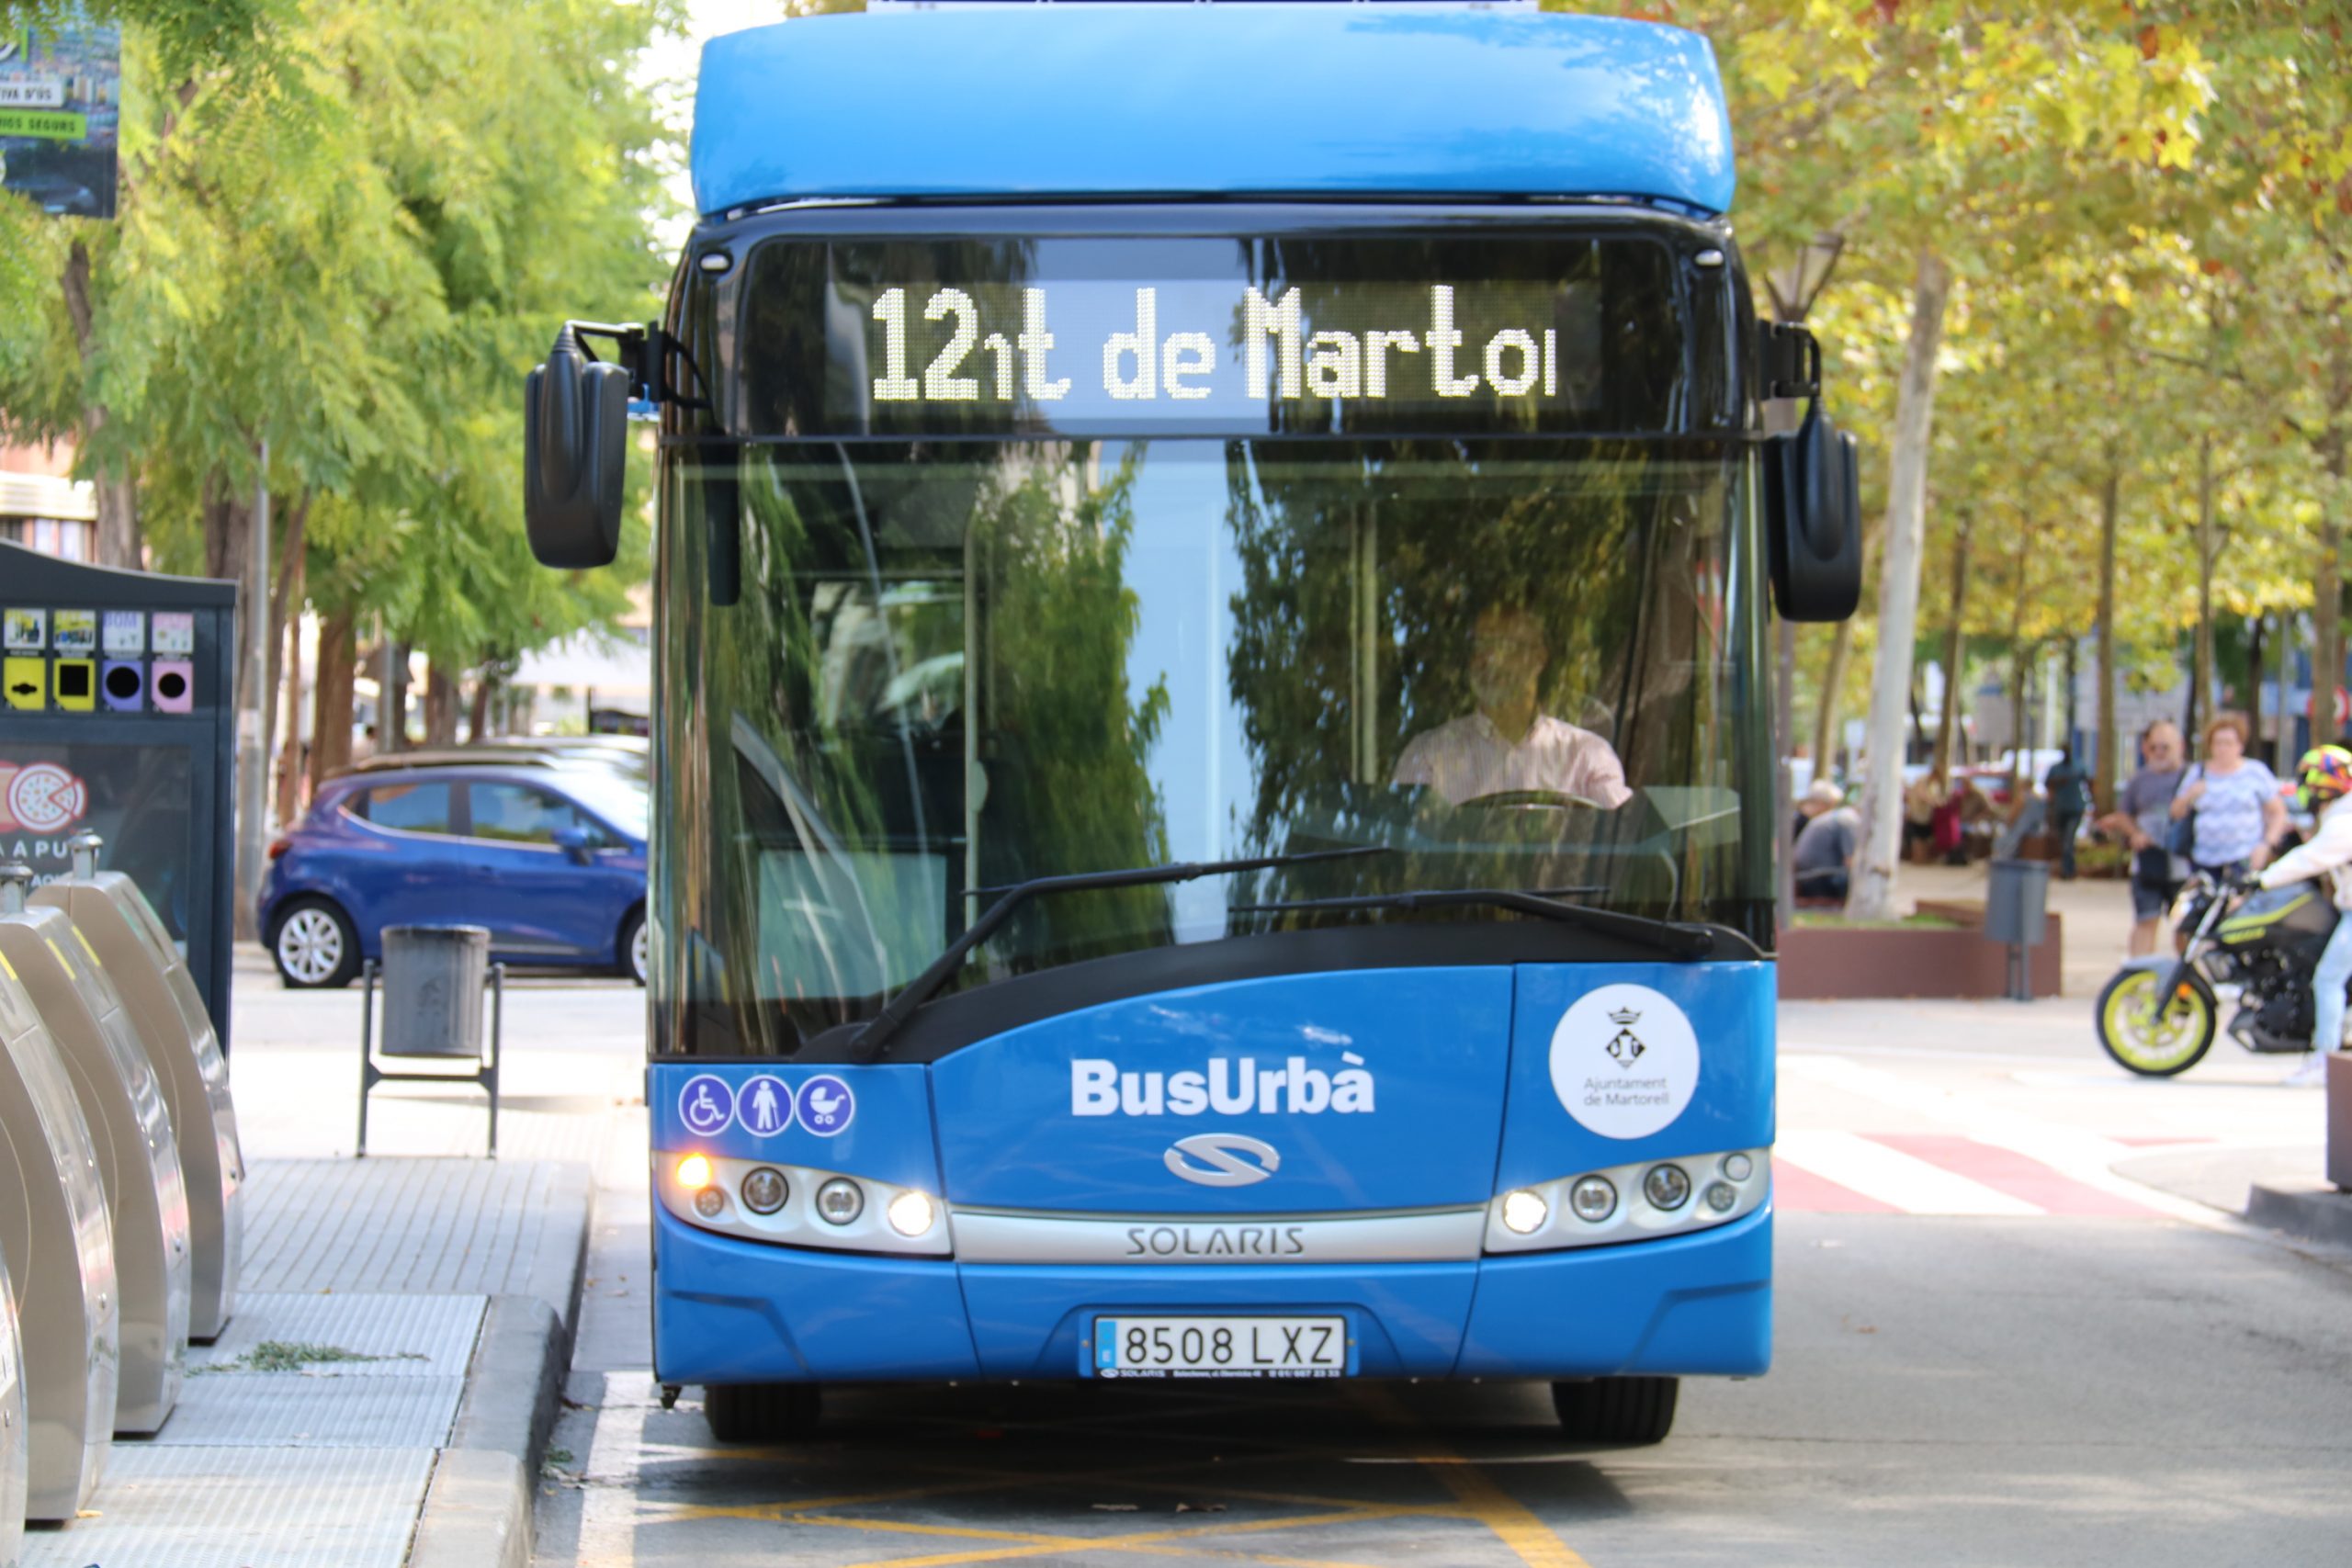 La Bustia autobus electric Martorell (2)